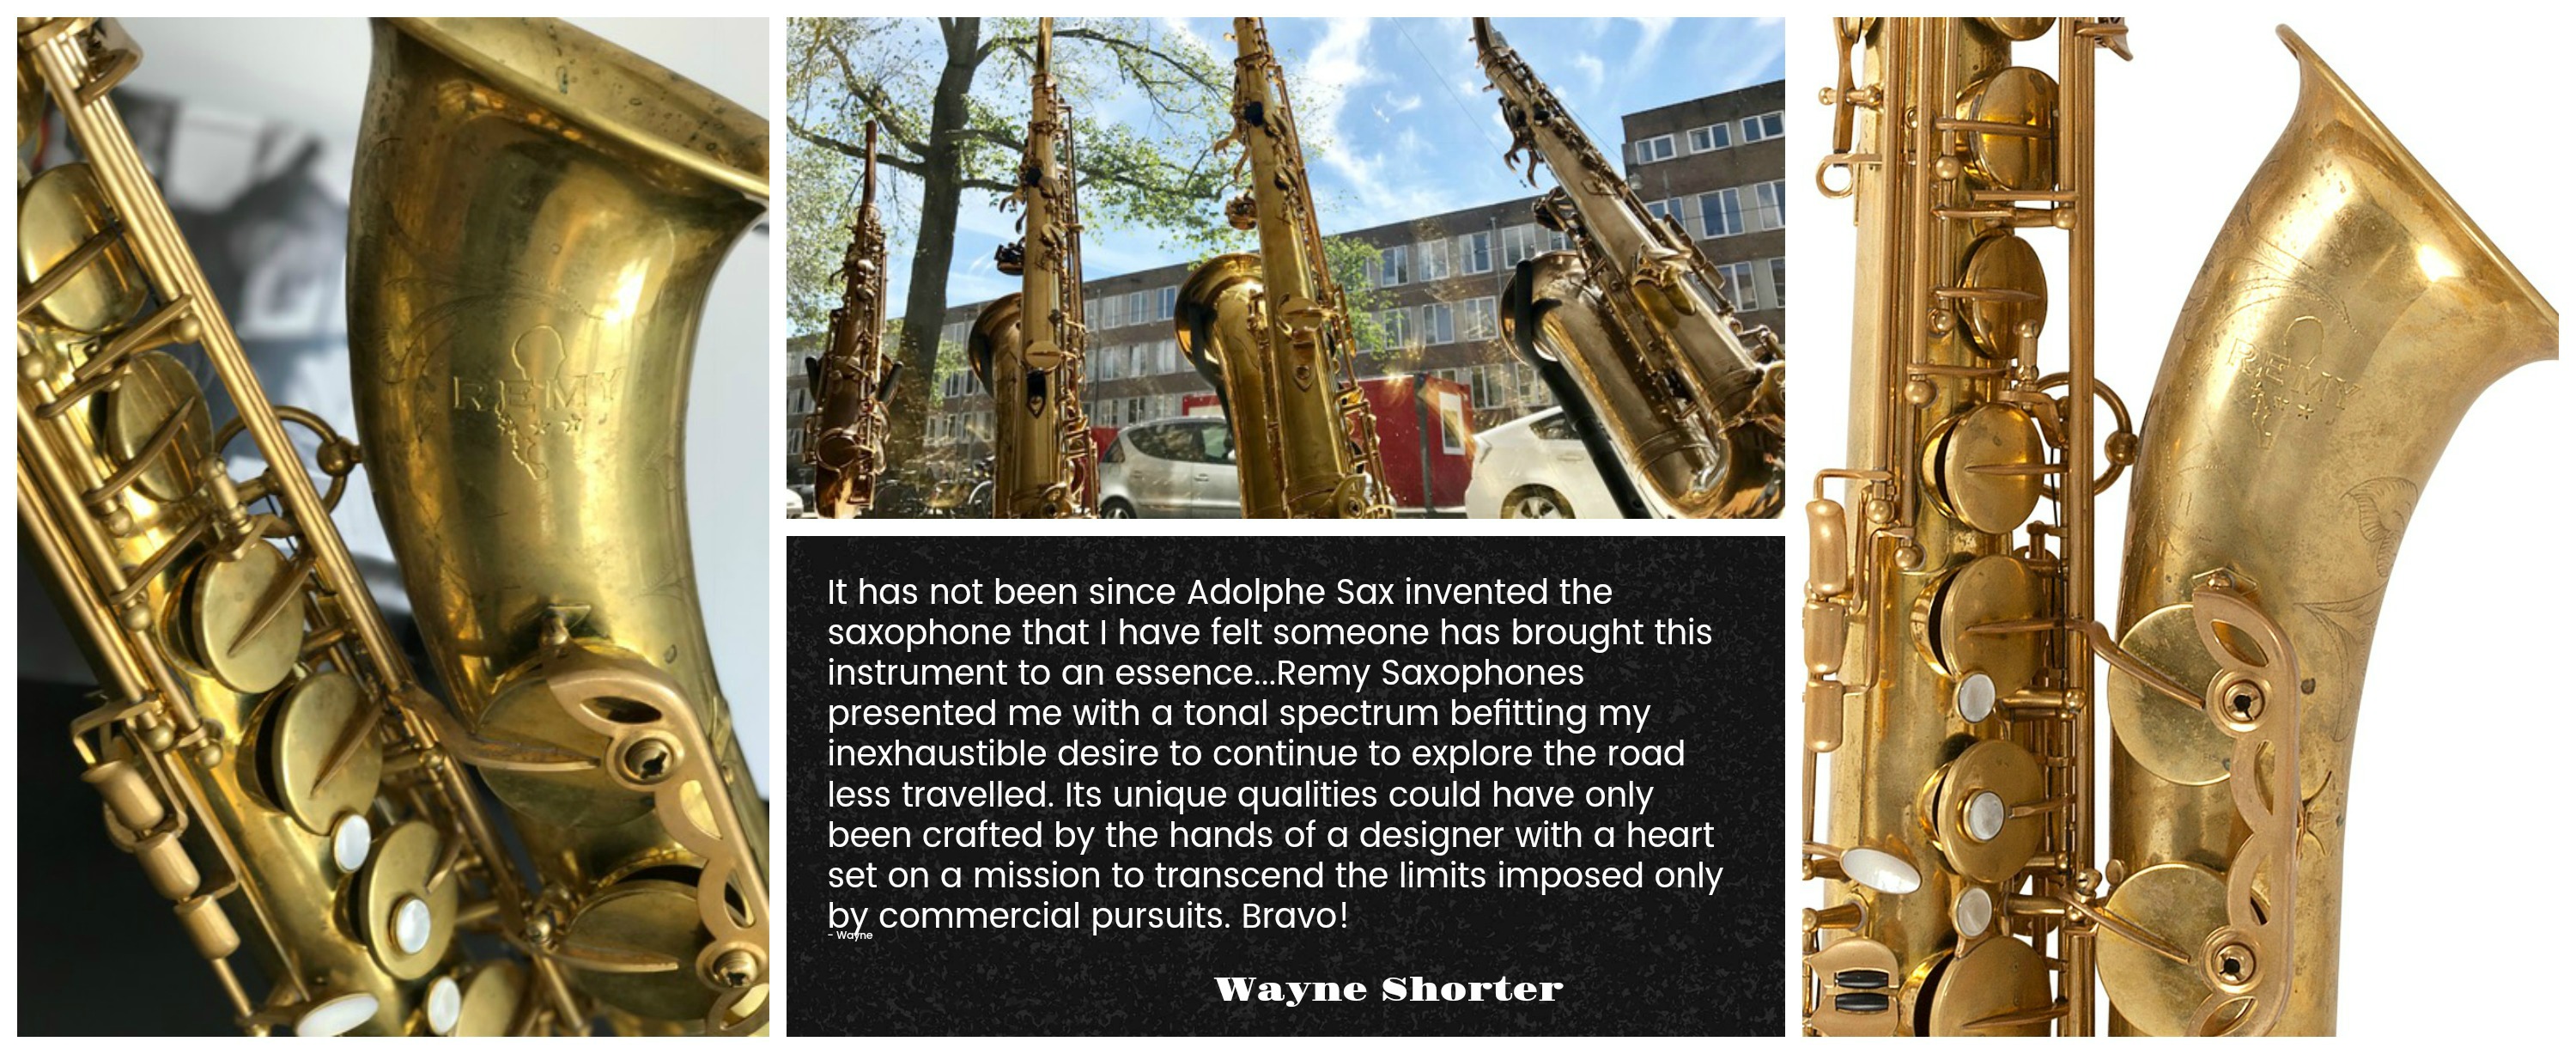 Saxophone jahaziel. Самый первый саксофон. Прародитель саксофона. Самый гигантский саксофон в мире. Самые известные произведения на саксофоне.